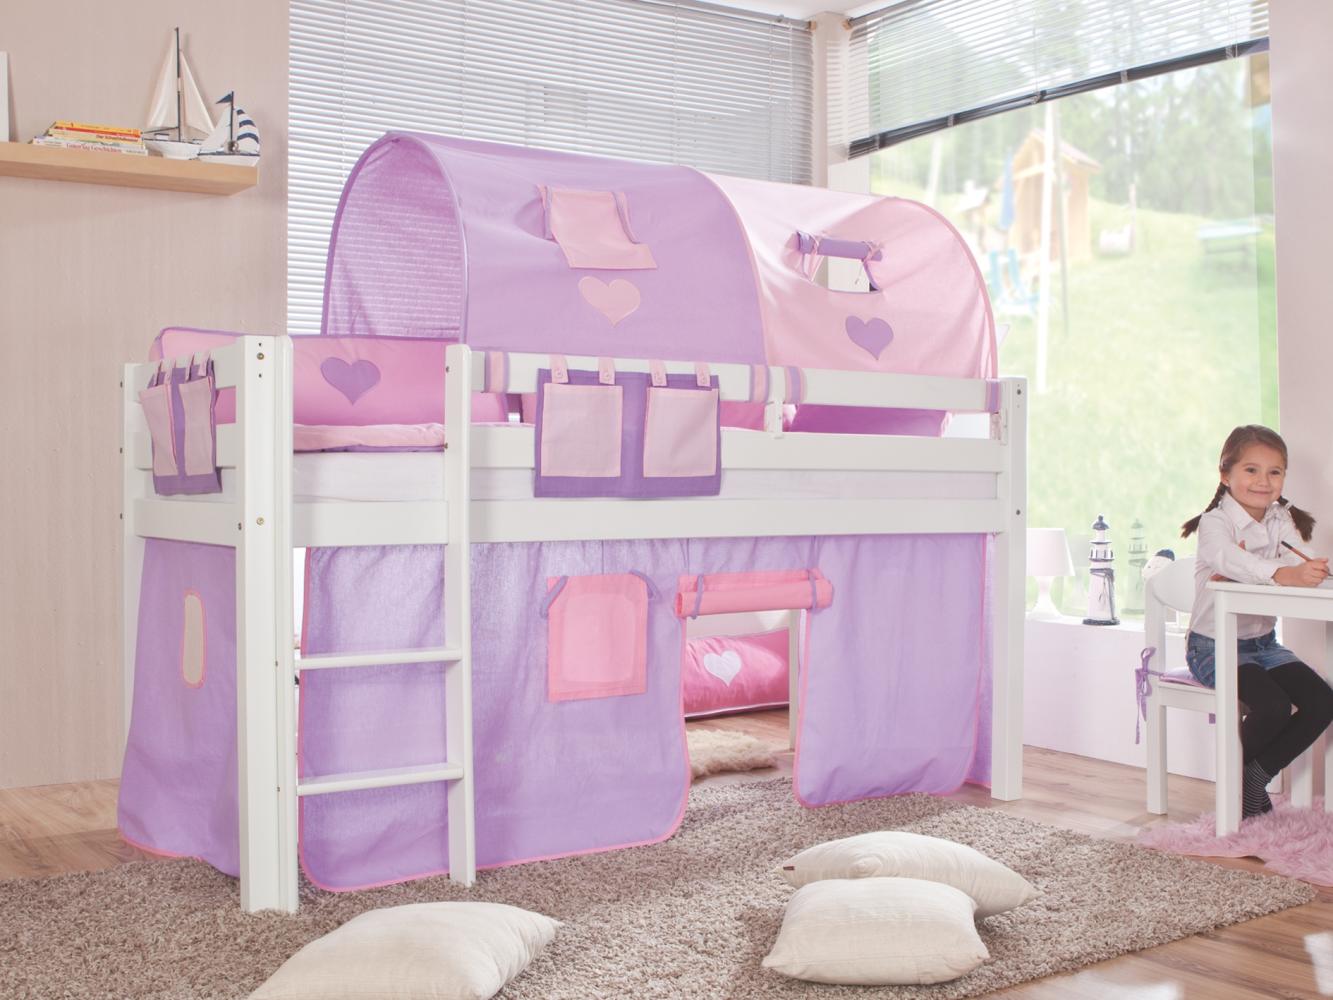 Relita Halbhohes Spielbett ALEX Buche massiv weiß lackiert mit Stoffset purple/rosa/herz Bild 1